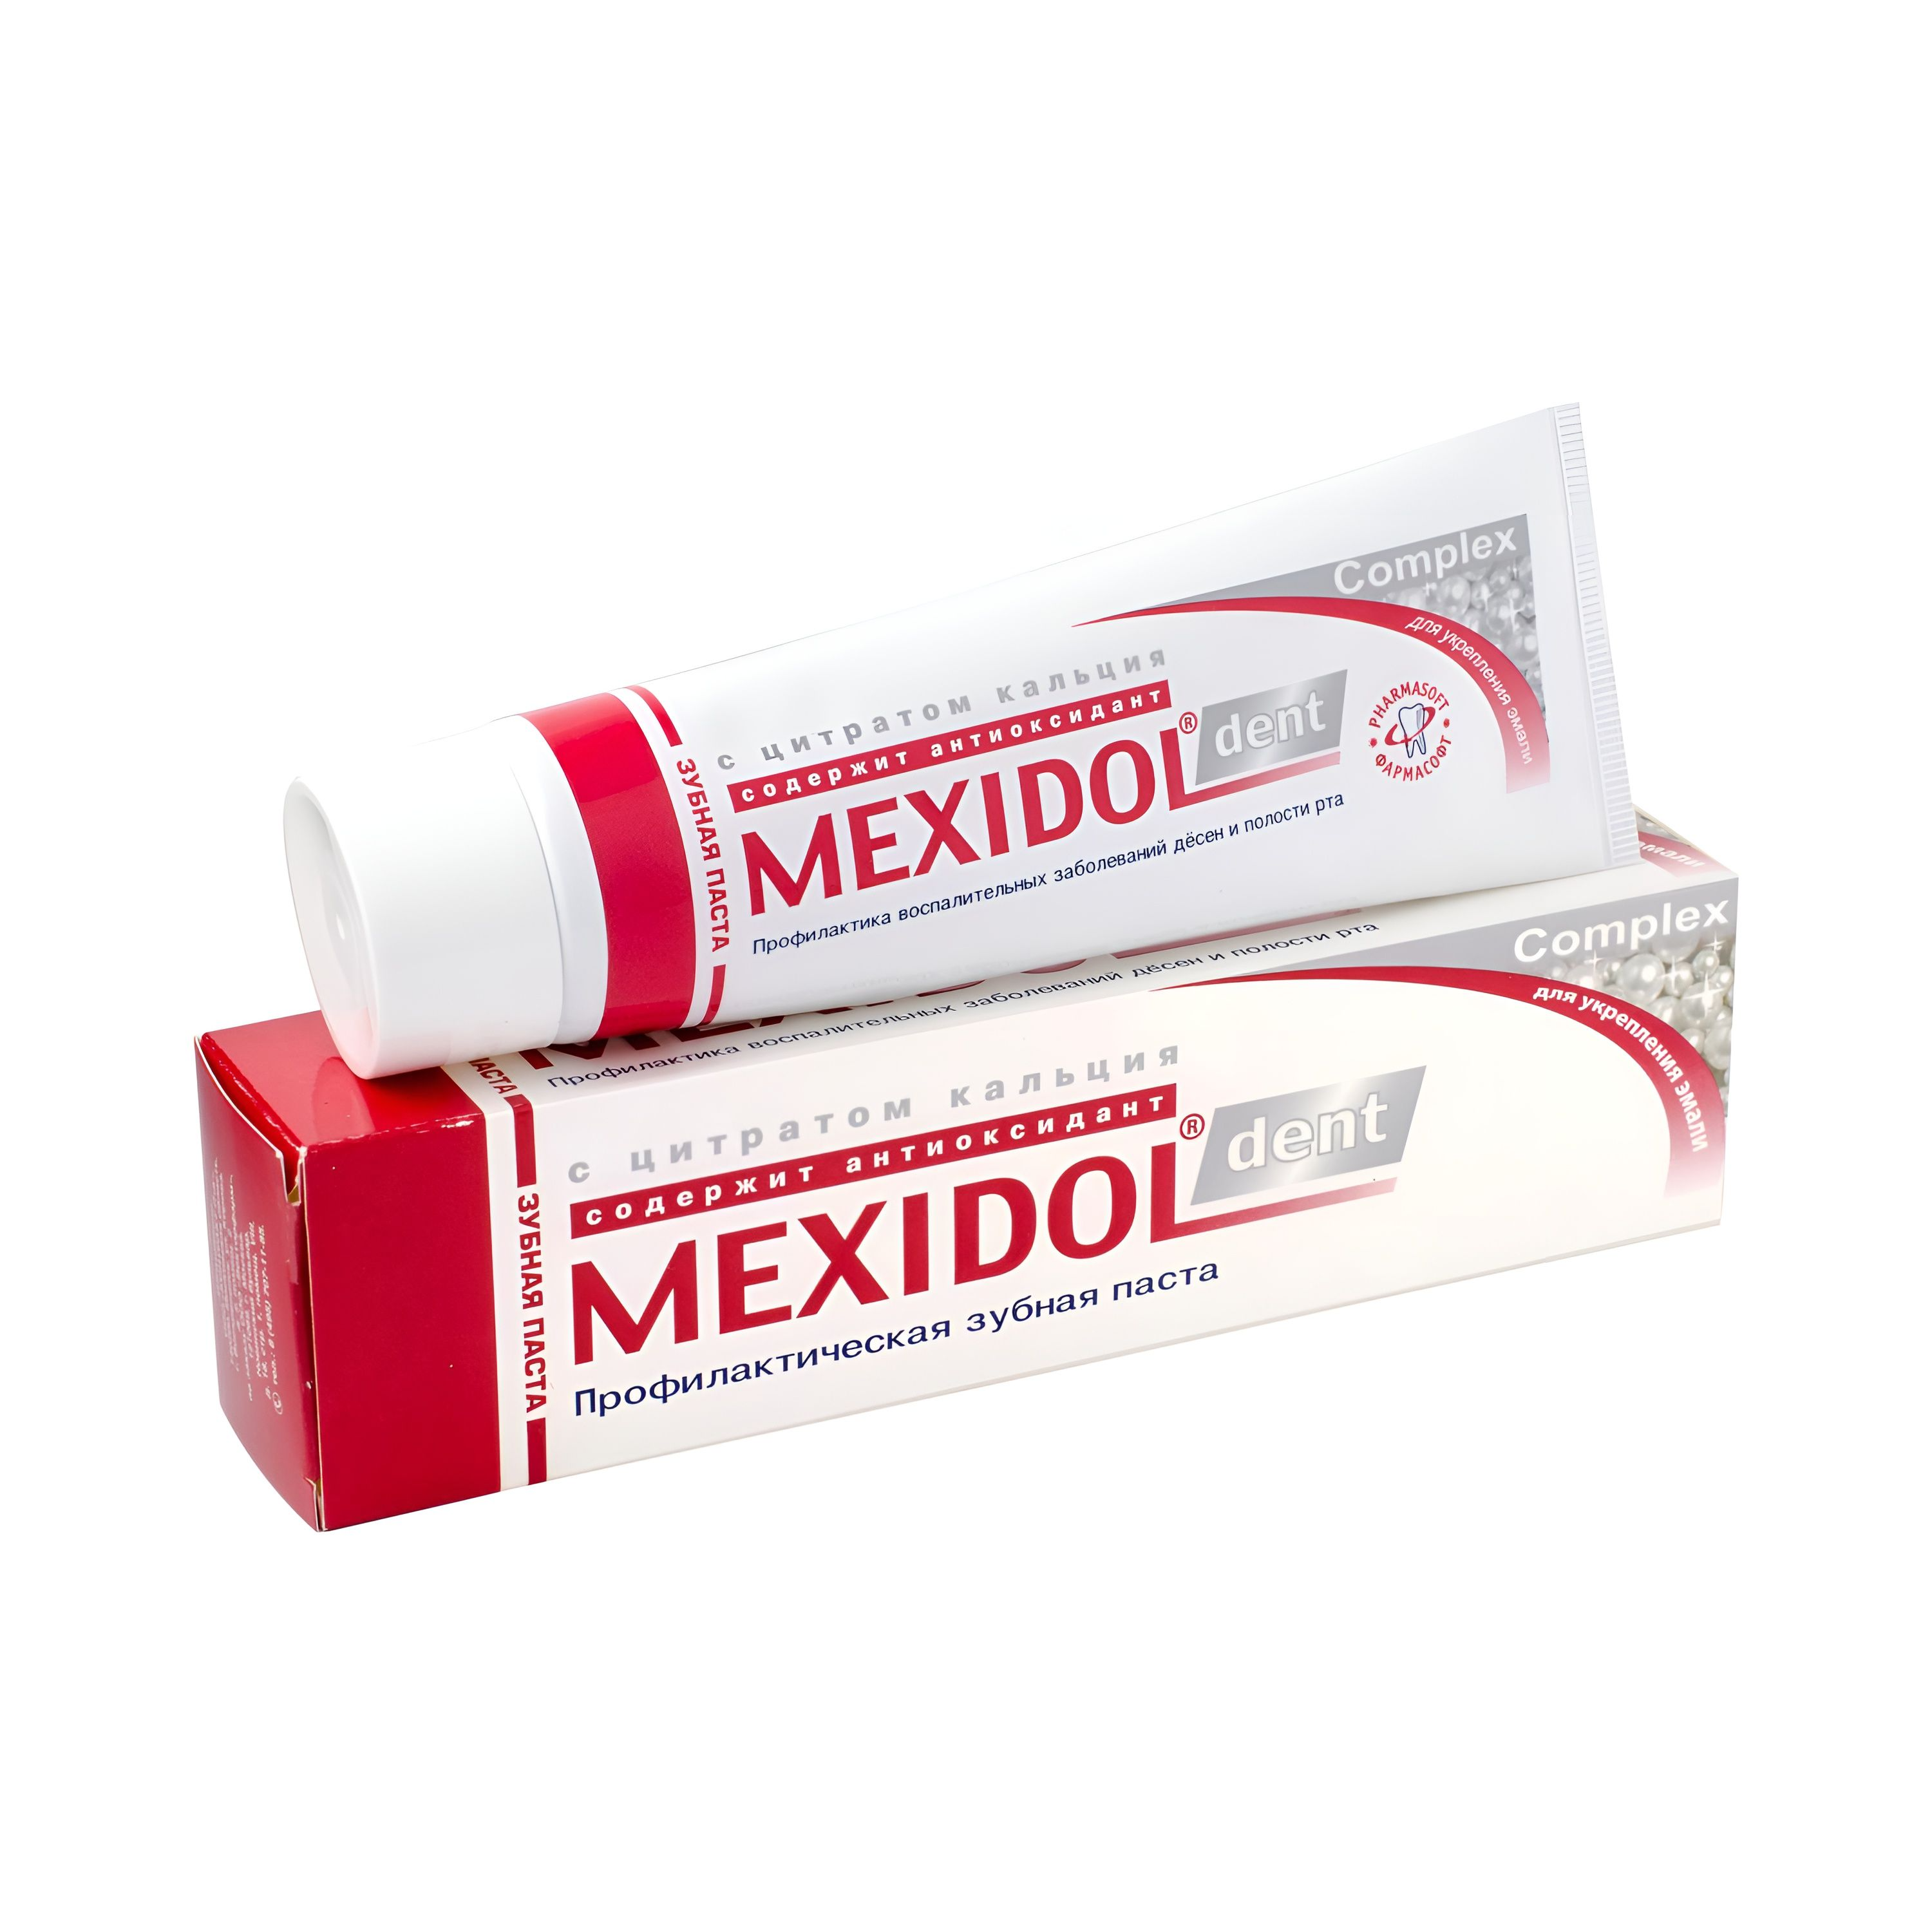 Мексидол Дент Комплекс, зубная паста, 65 г з паста мексидол дент фито 100г